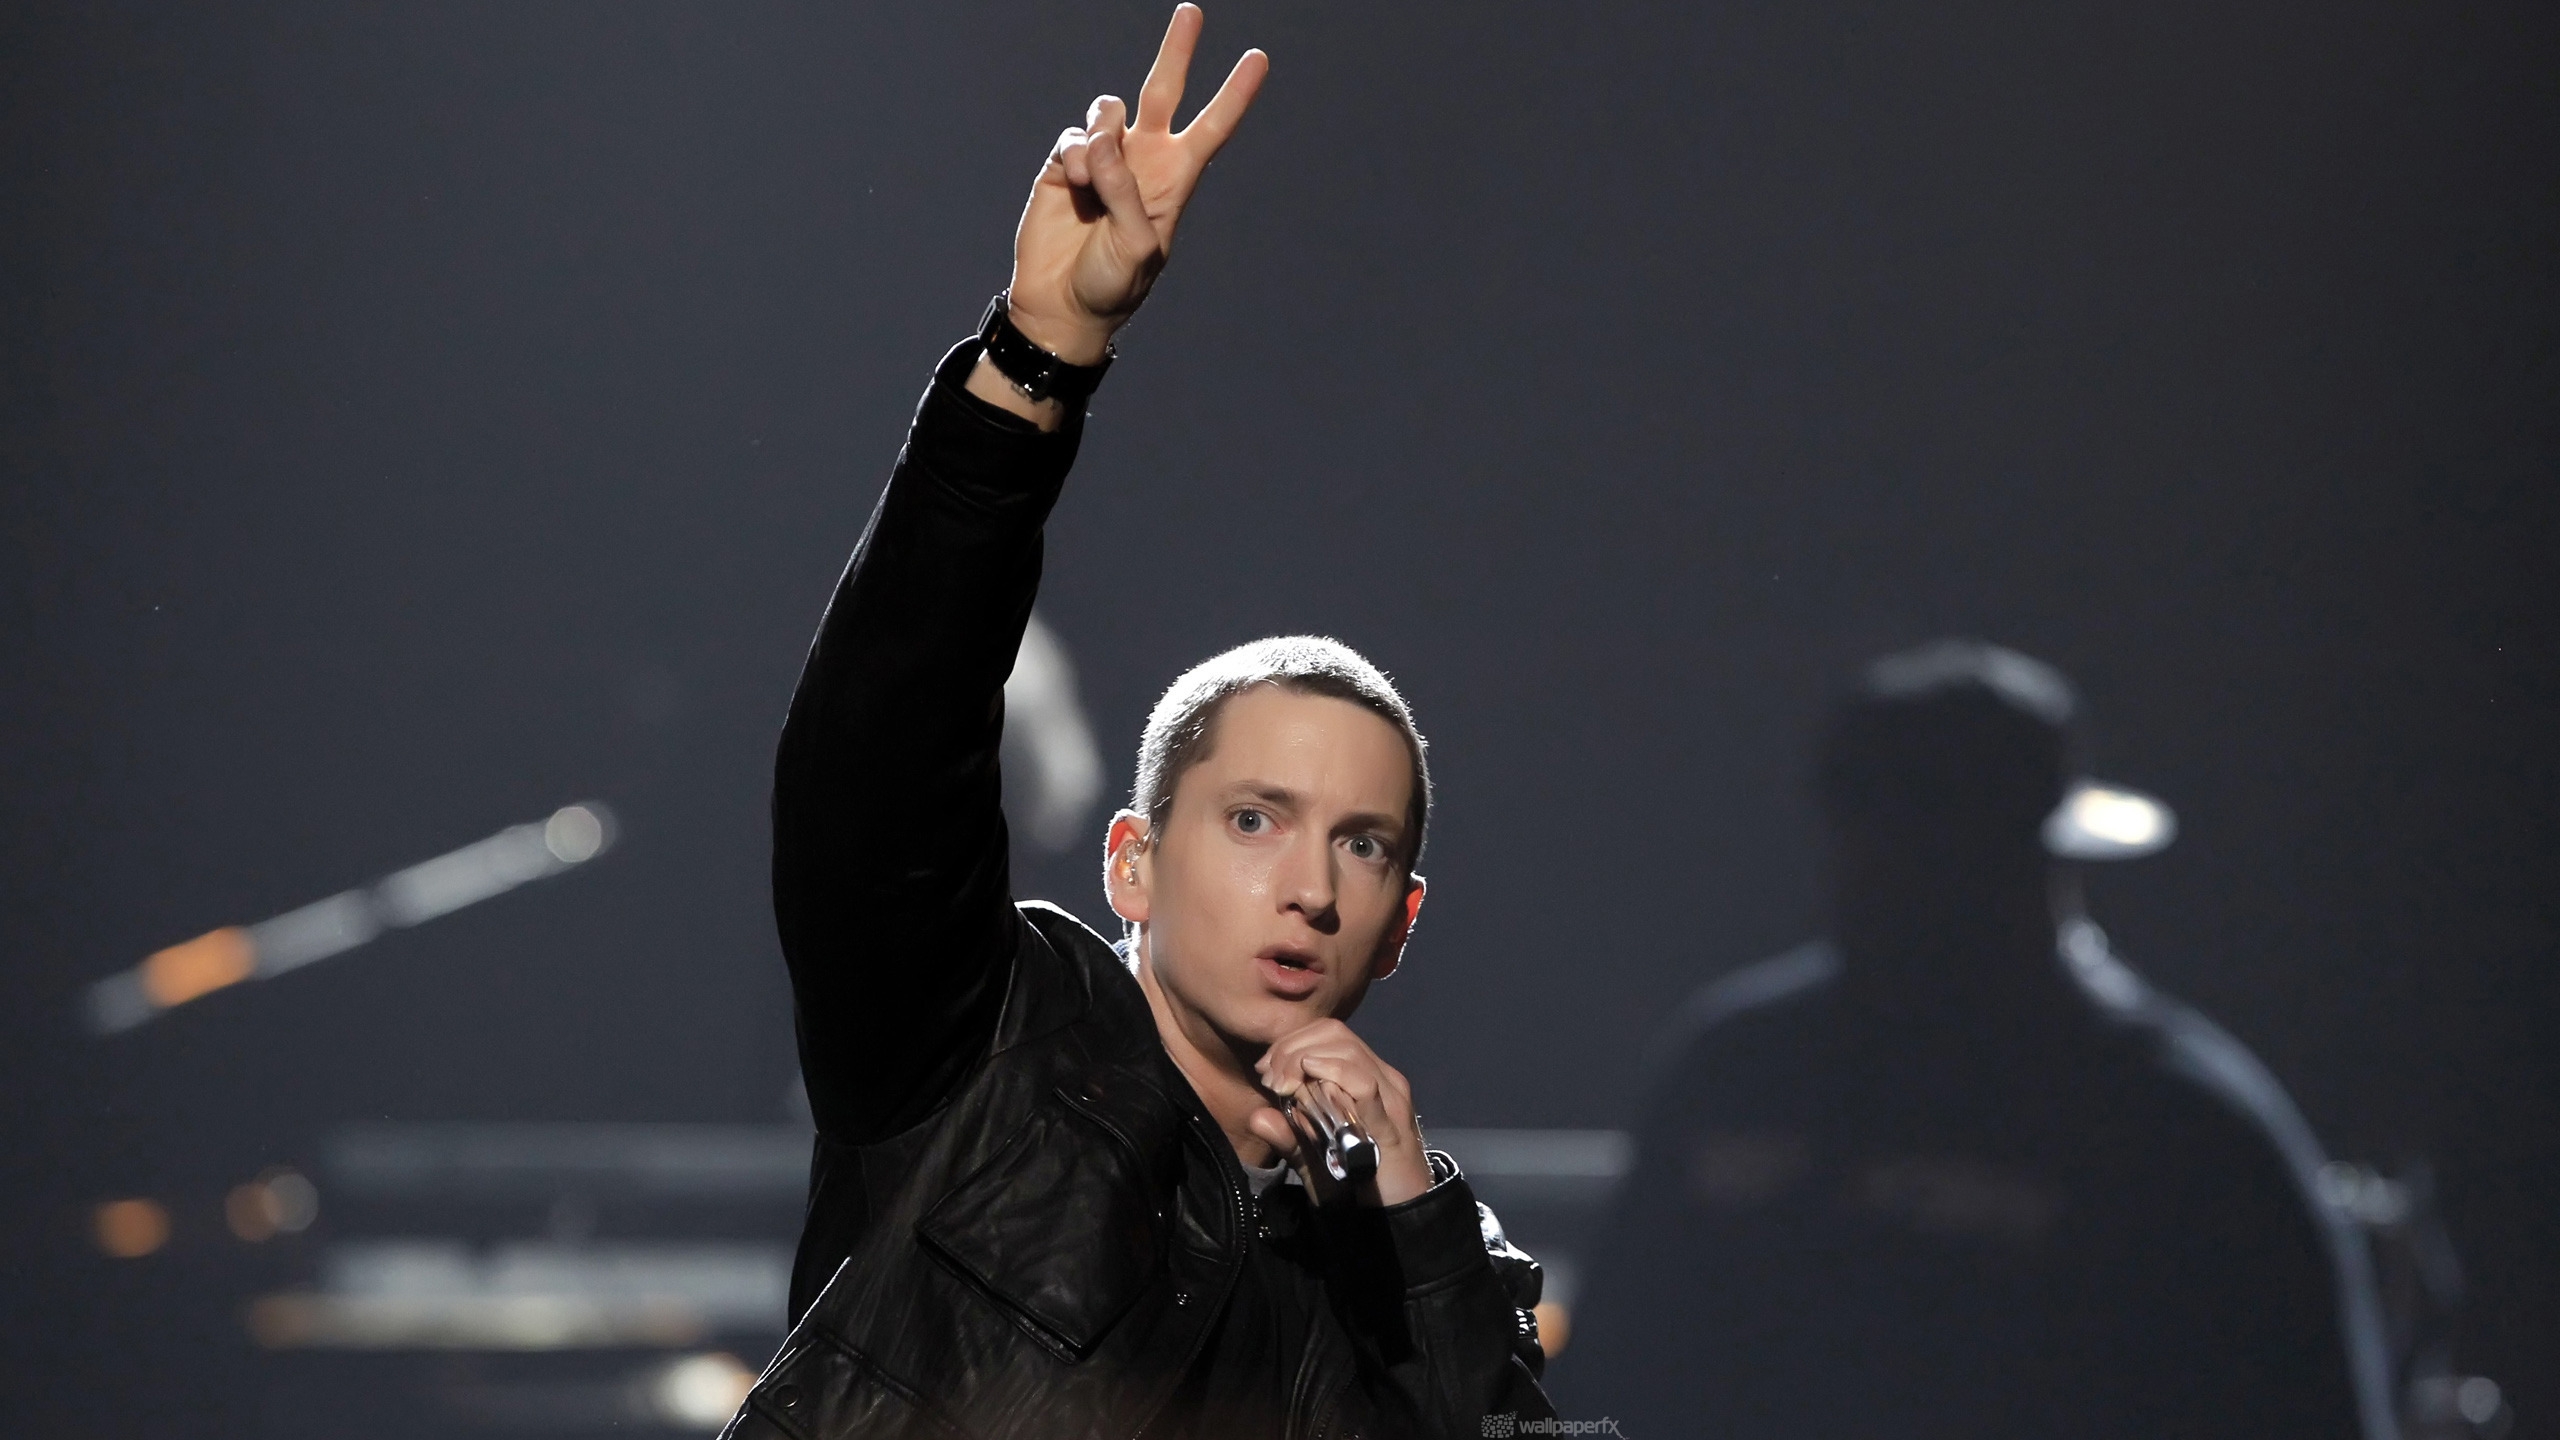 Eminem Peace for 2560x1440 HDTV resolution